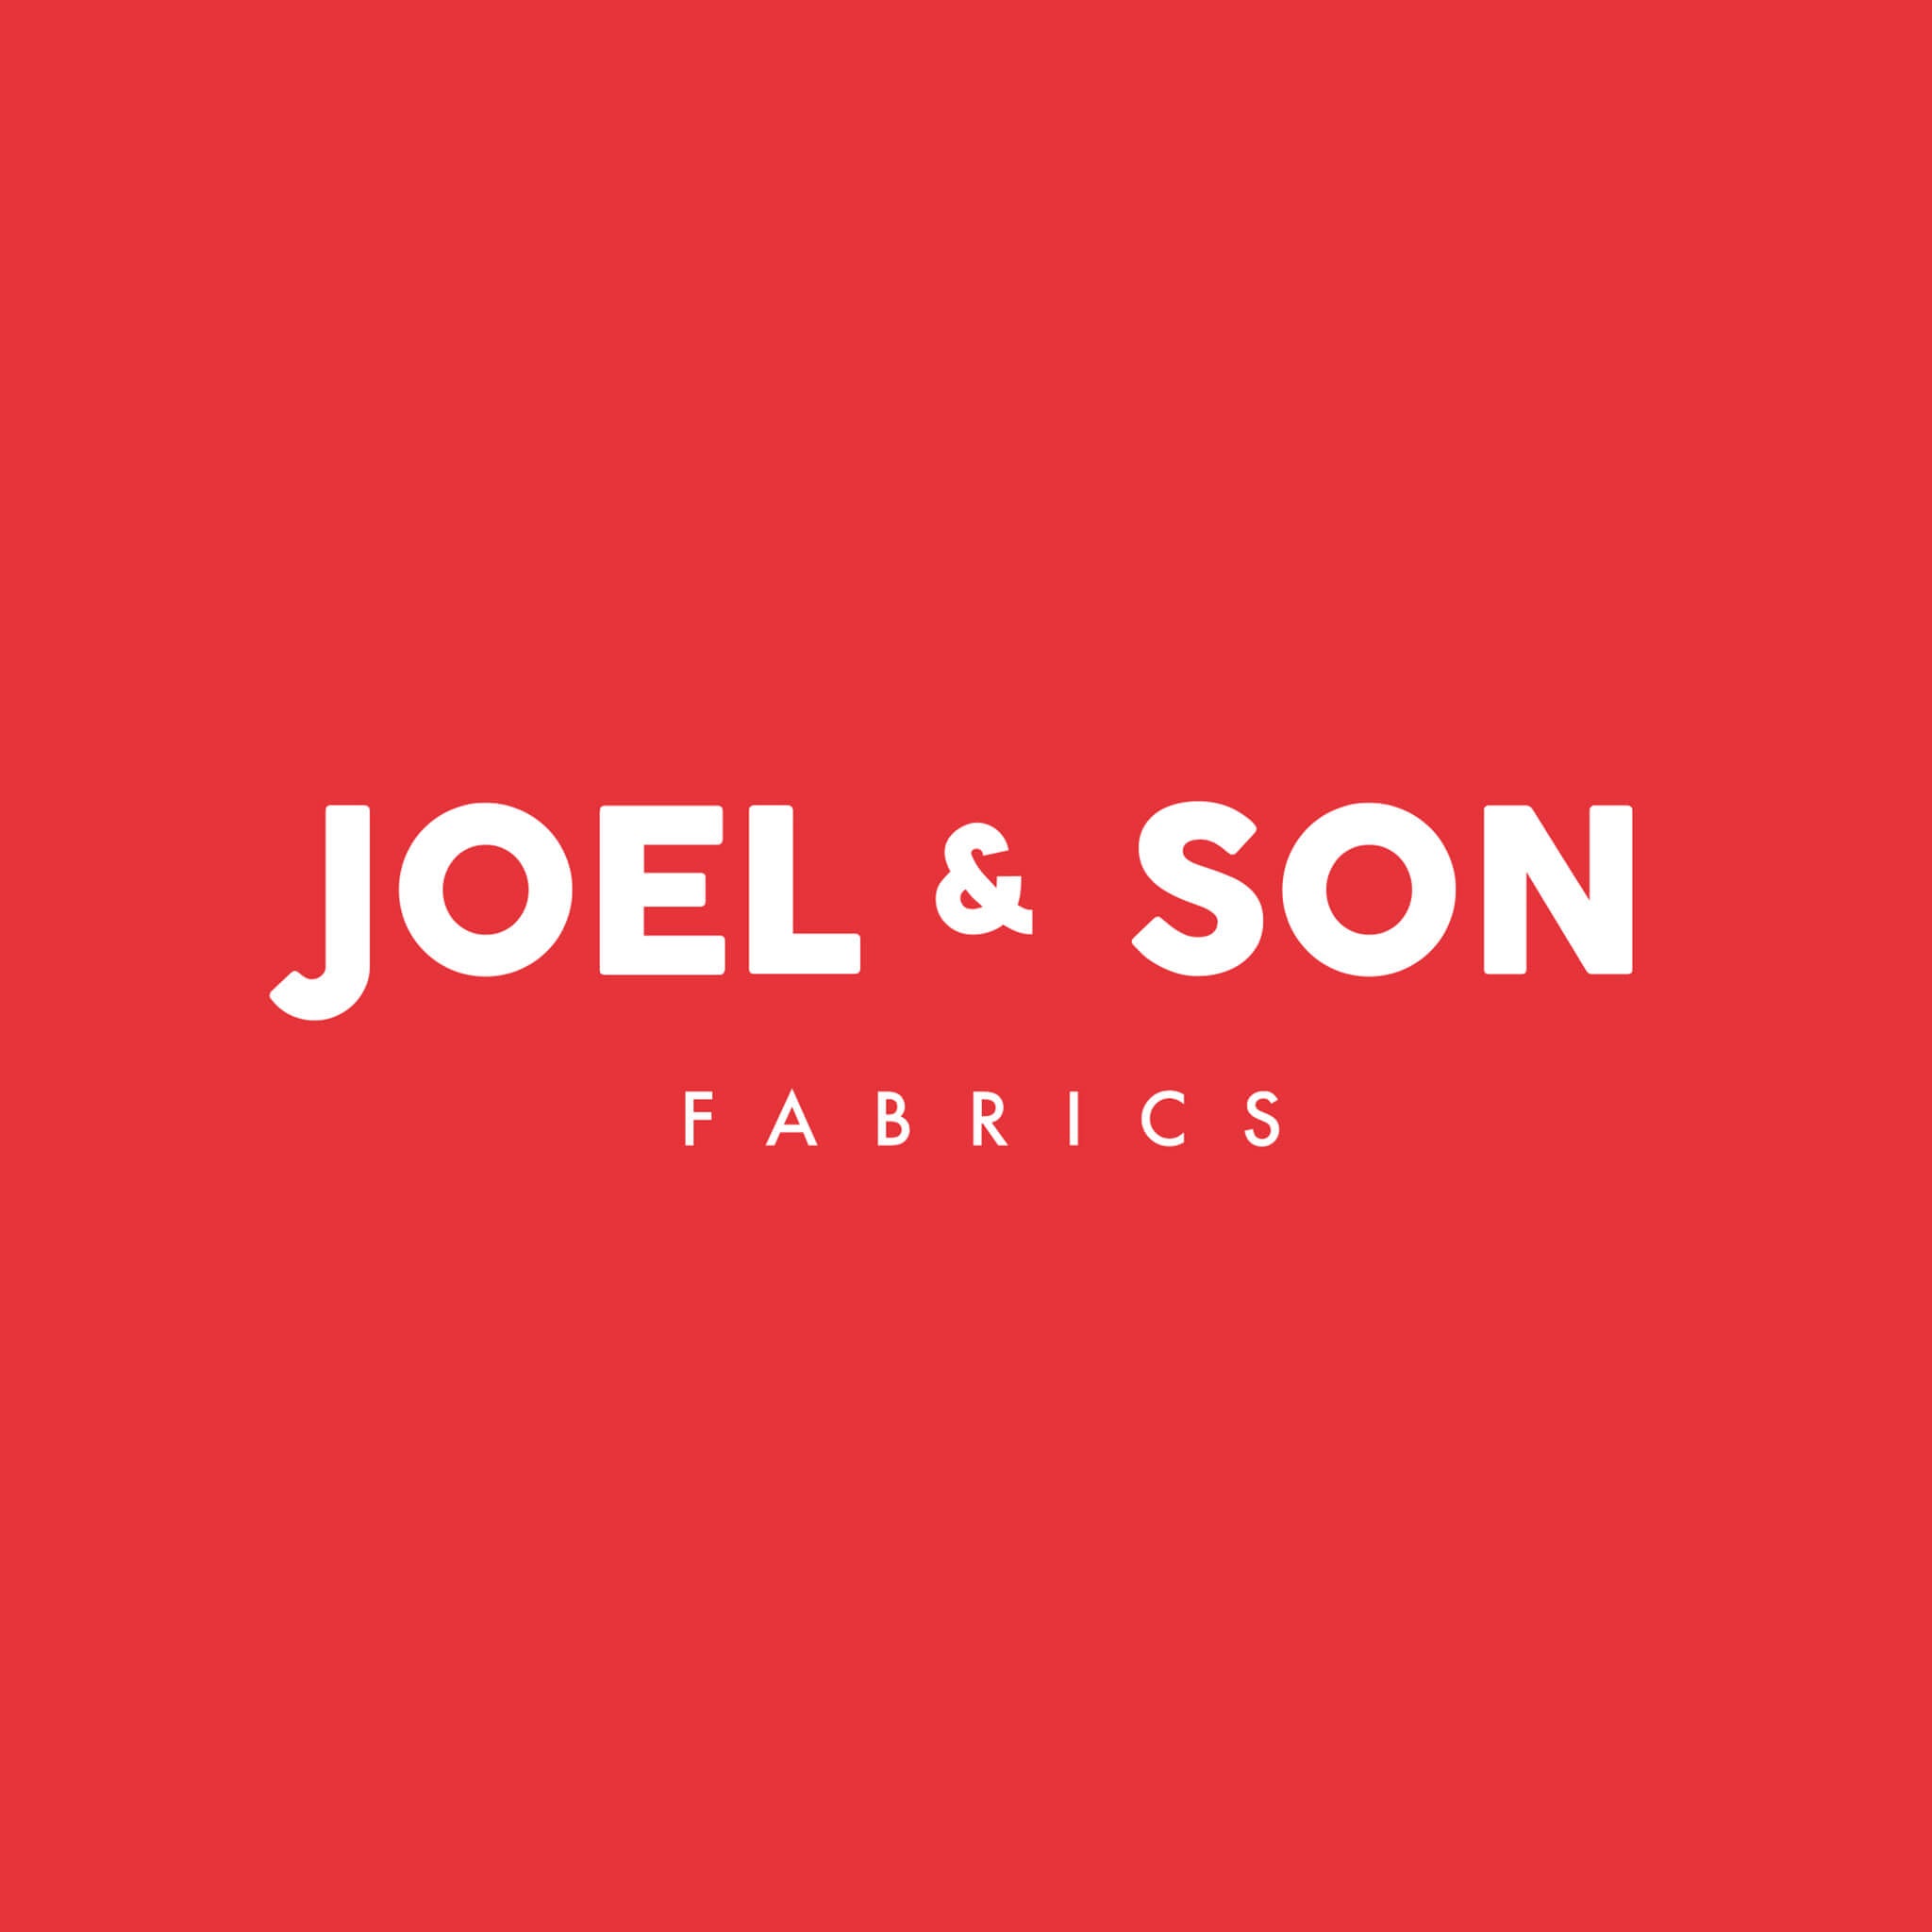 Joel & Son